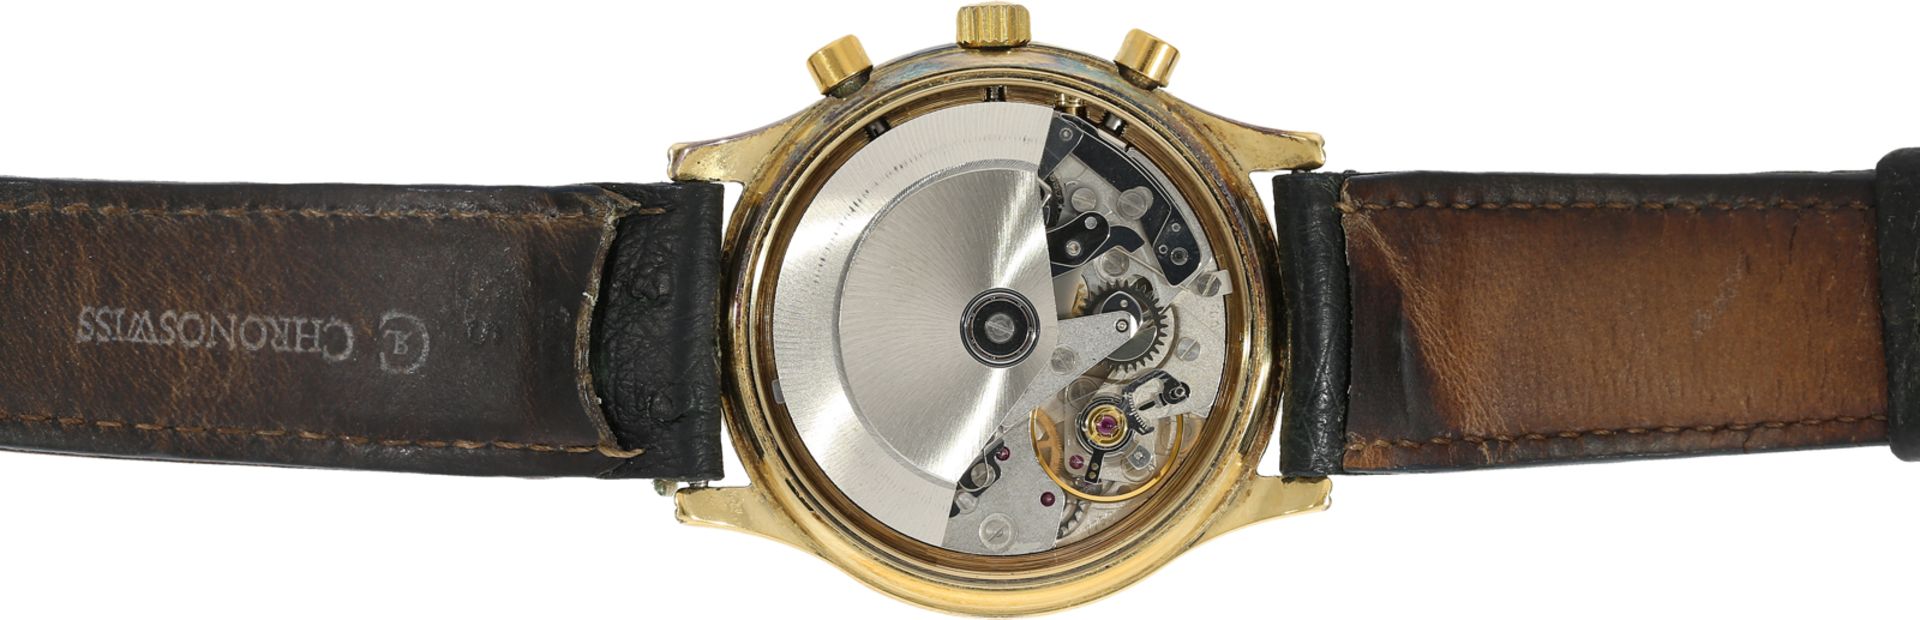 Armbanduhr: vintage Chronoswiss Chronograph mit Kalender und Mondphase, Ref.77990, ca.1985 - Bild 3 aus 4